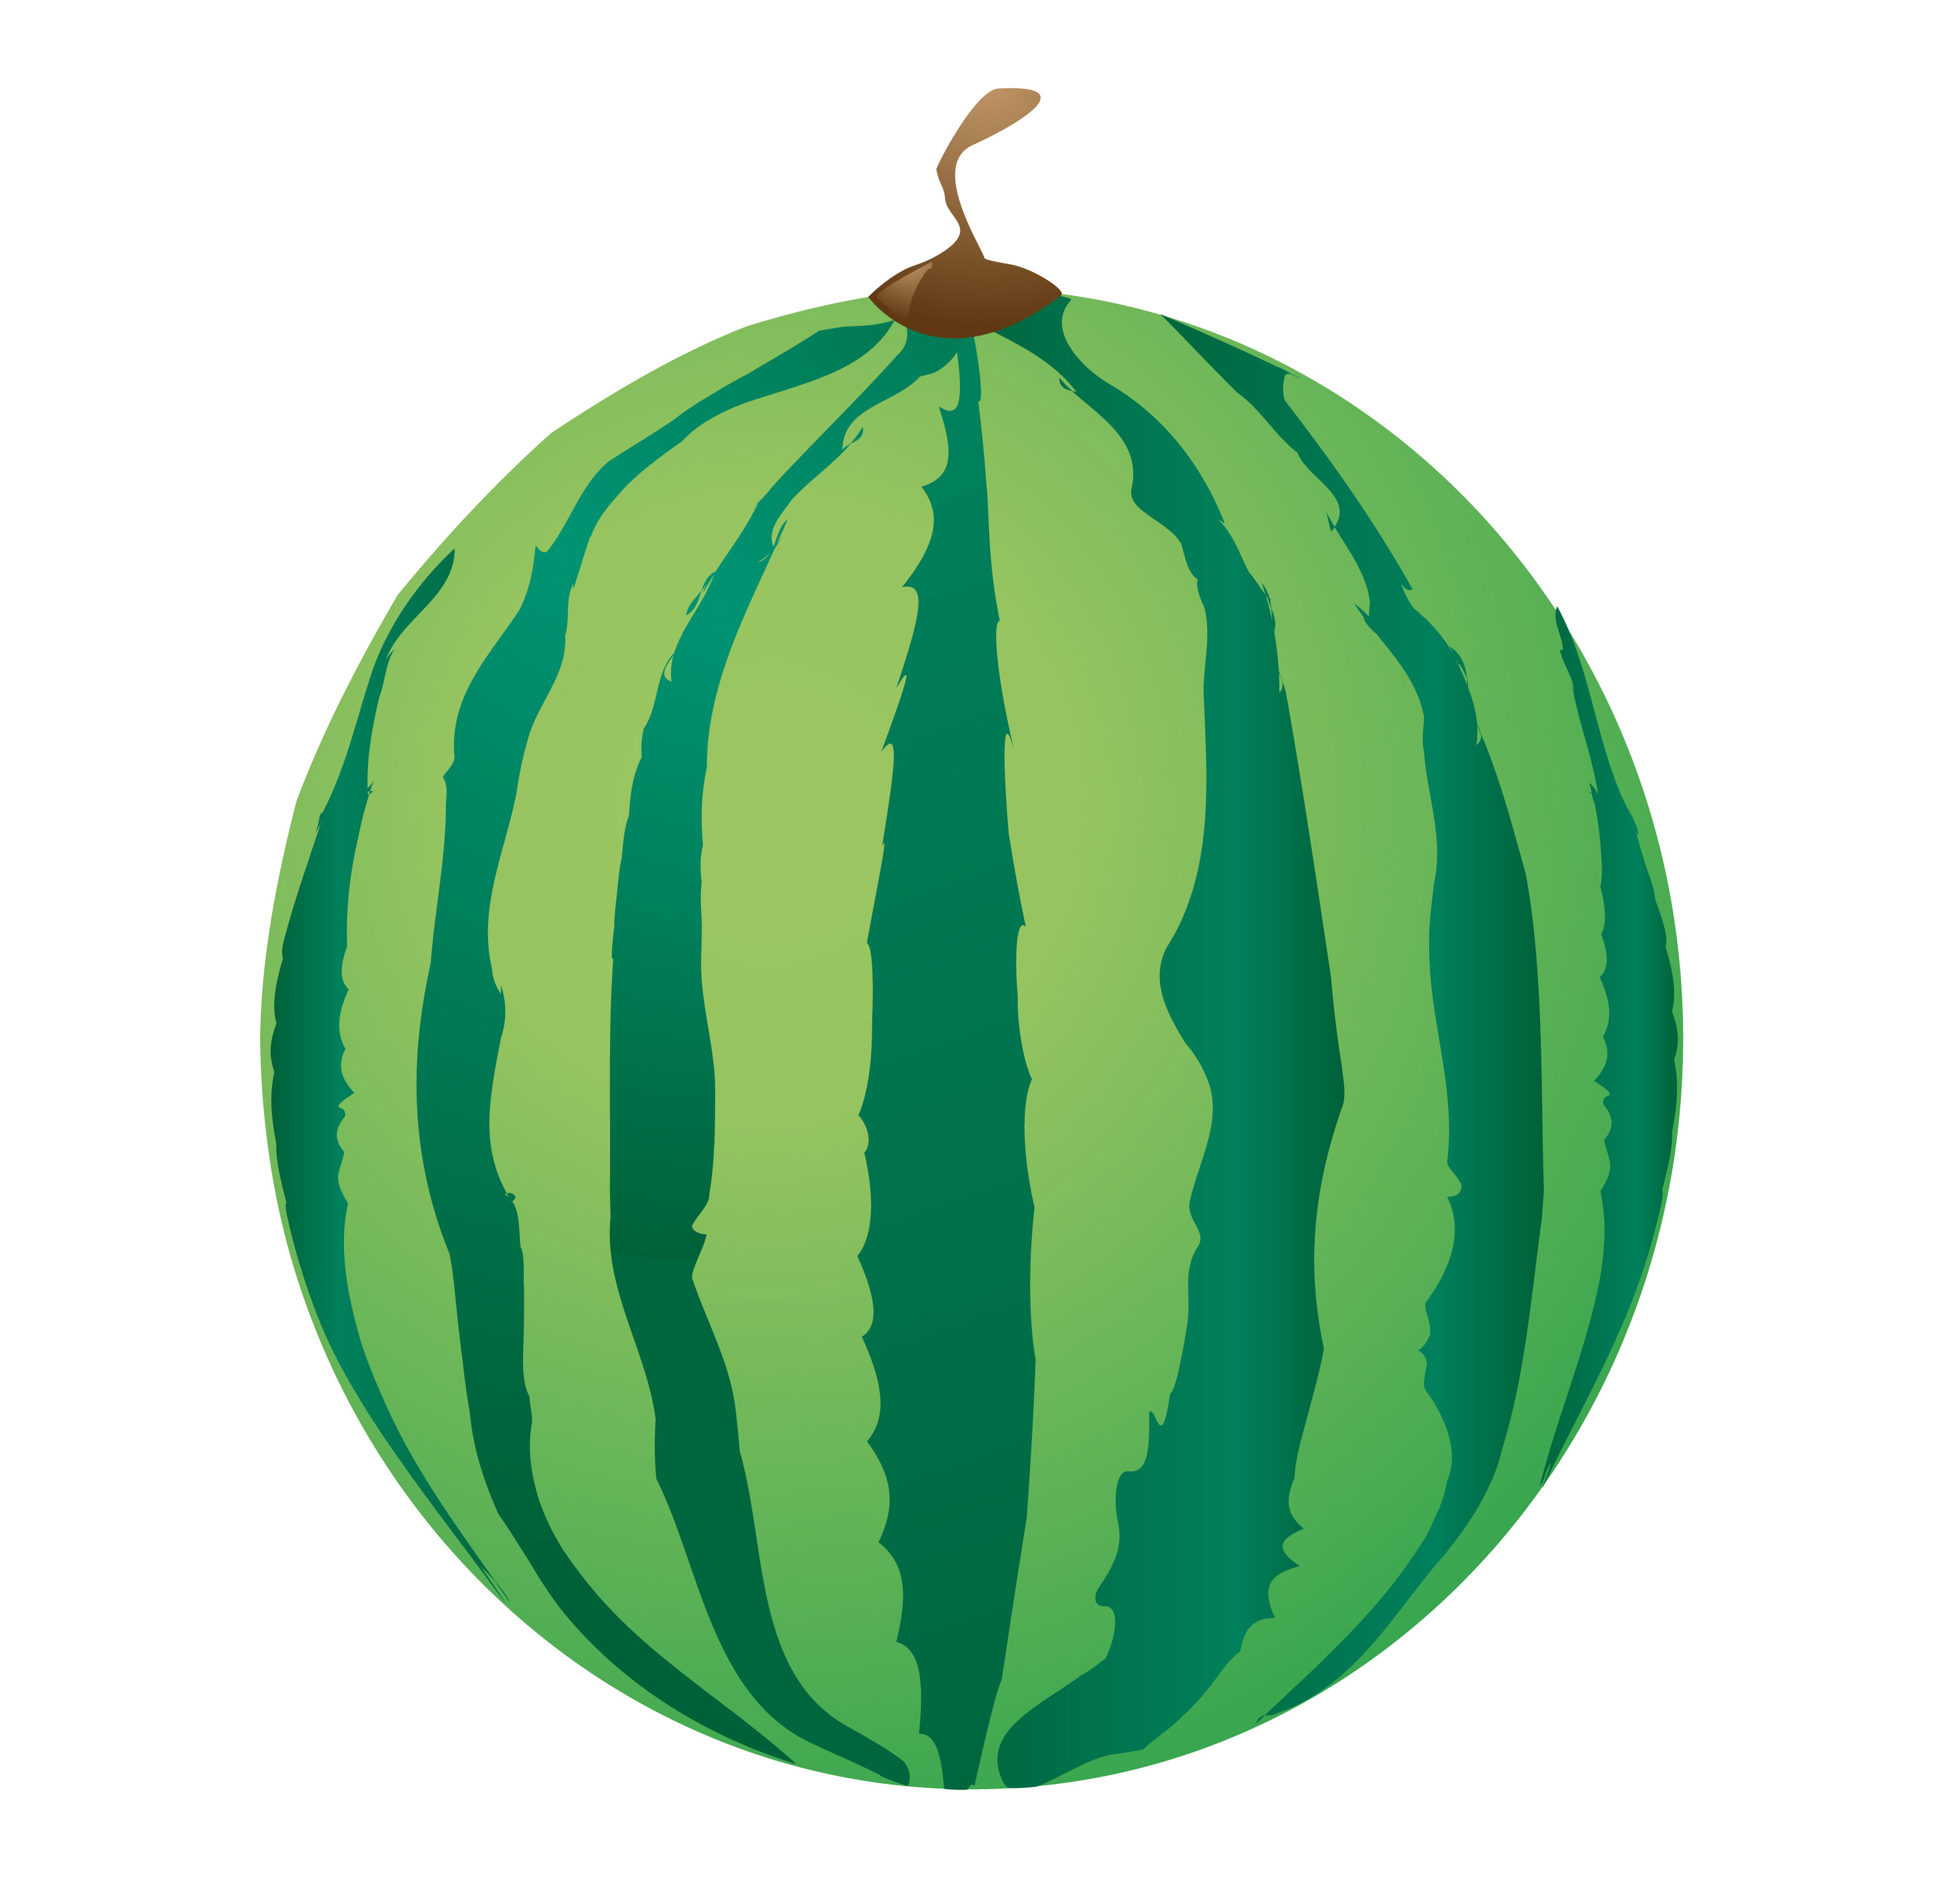 Download watermelon 489189 - Download Free Vectors, Clipart Graphics & Vector Art